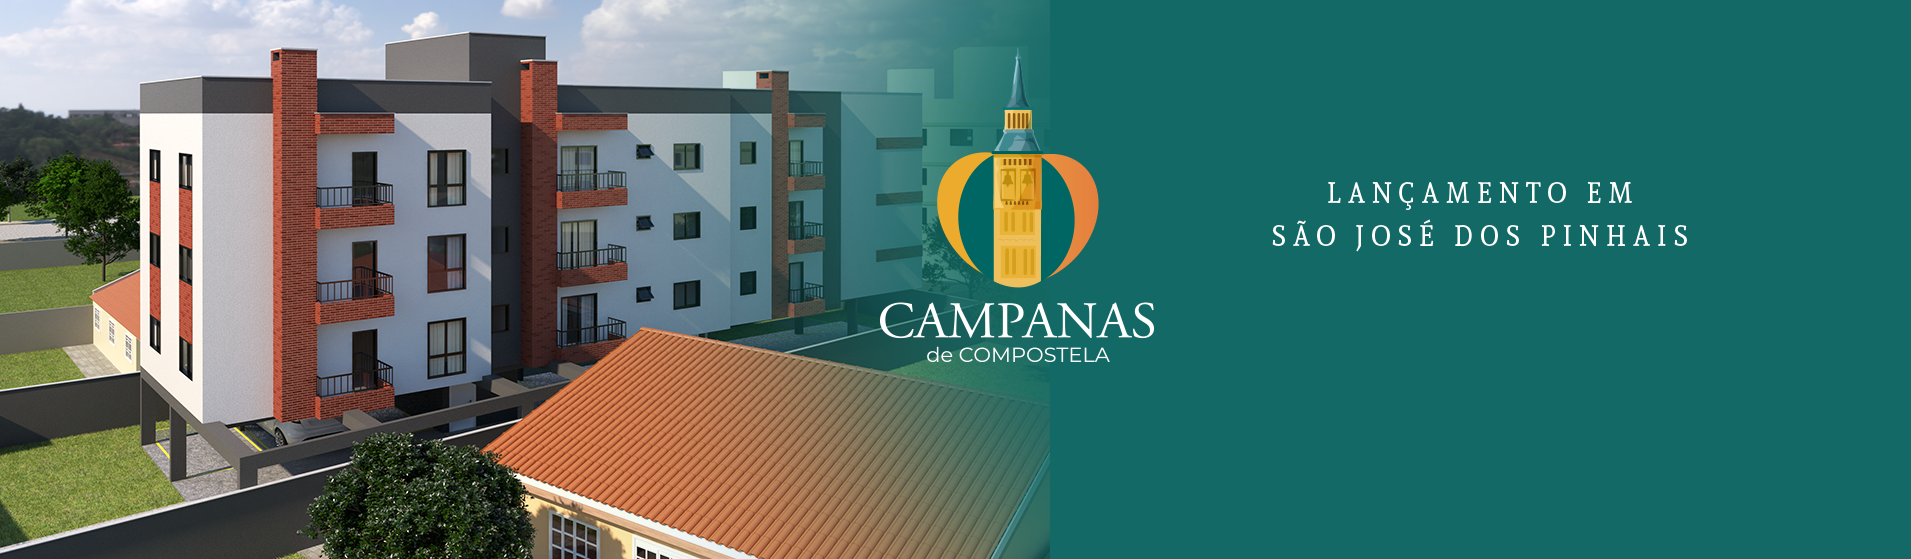 Campanas de Compostela